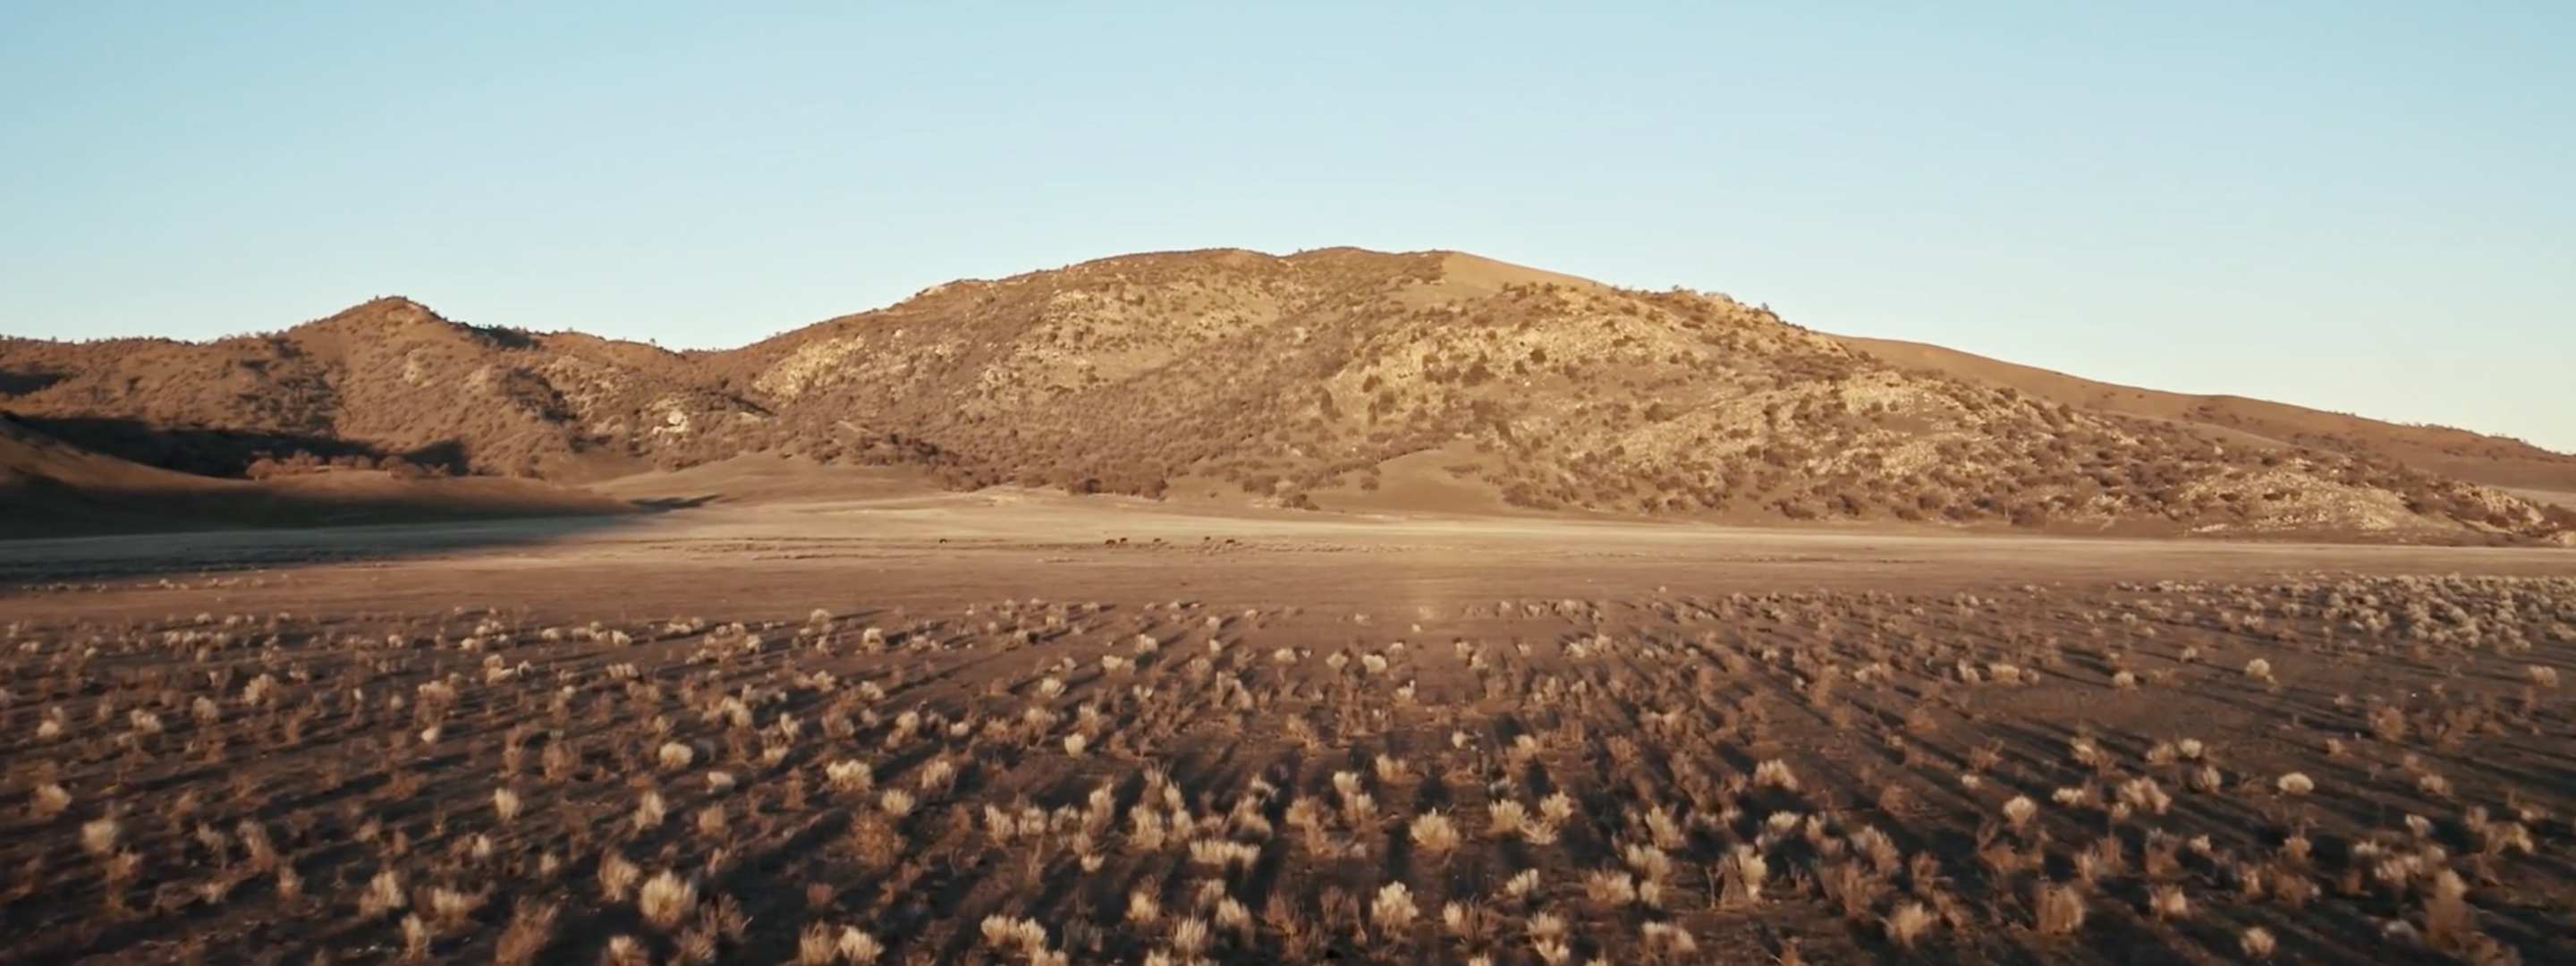 <a href="https://www.capgemini.com/news/inside-stories/mojave-desert/"></a><a href="https://www.capgemini.com/pt-en/news/inside-stories/mojave-desert/">The Mojave Desert: Data for tortoises and tires</a>